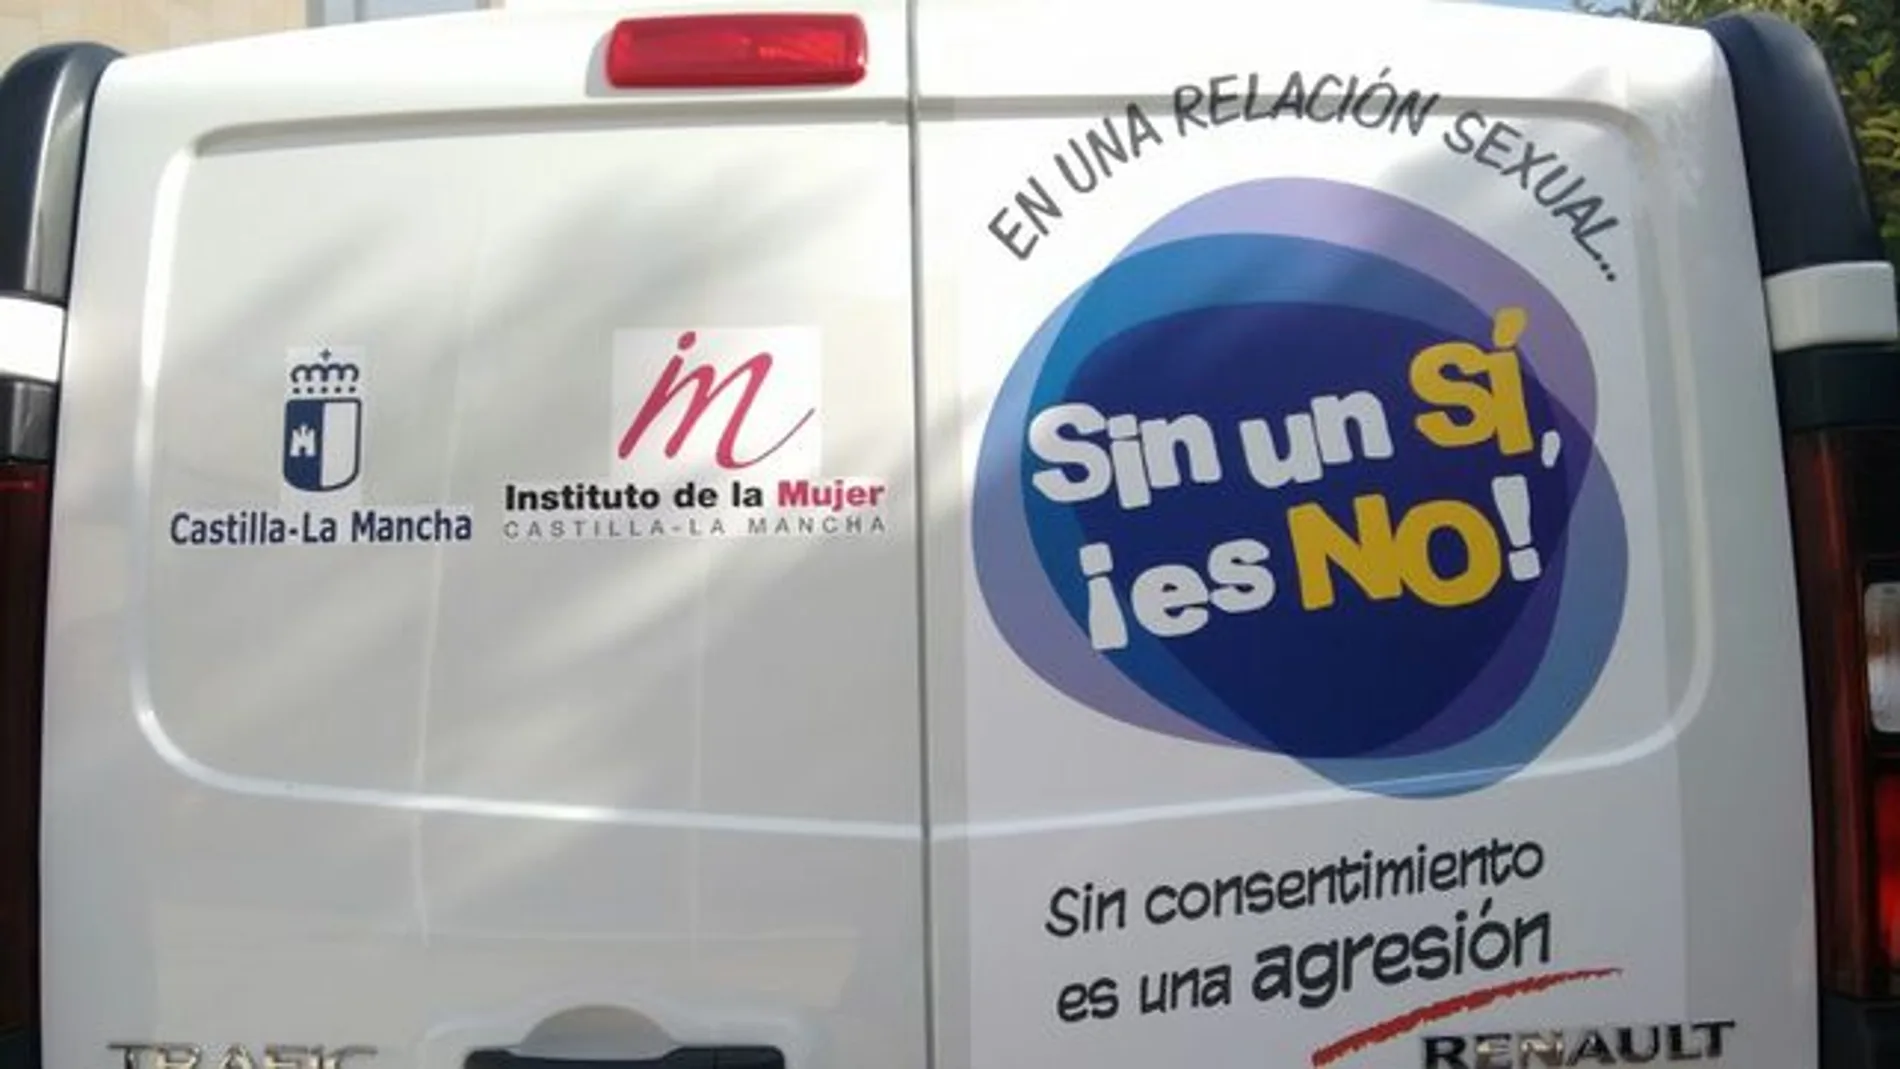 Campaña puesta en marcha en Castilla-La Mancha